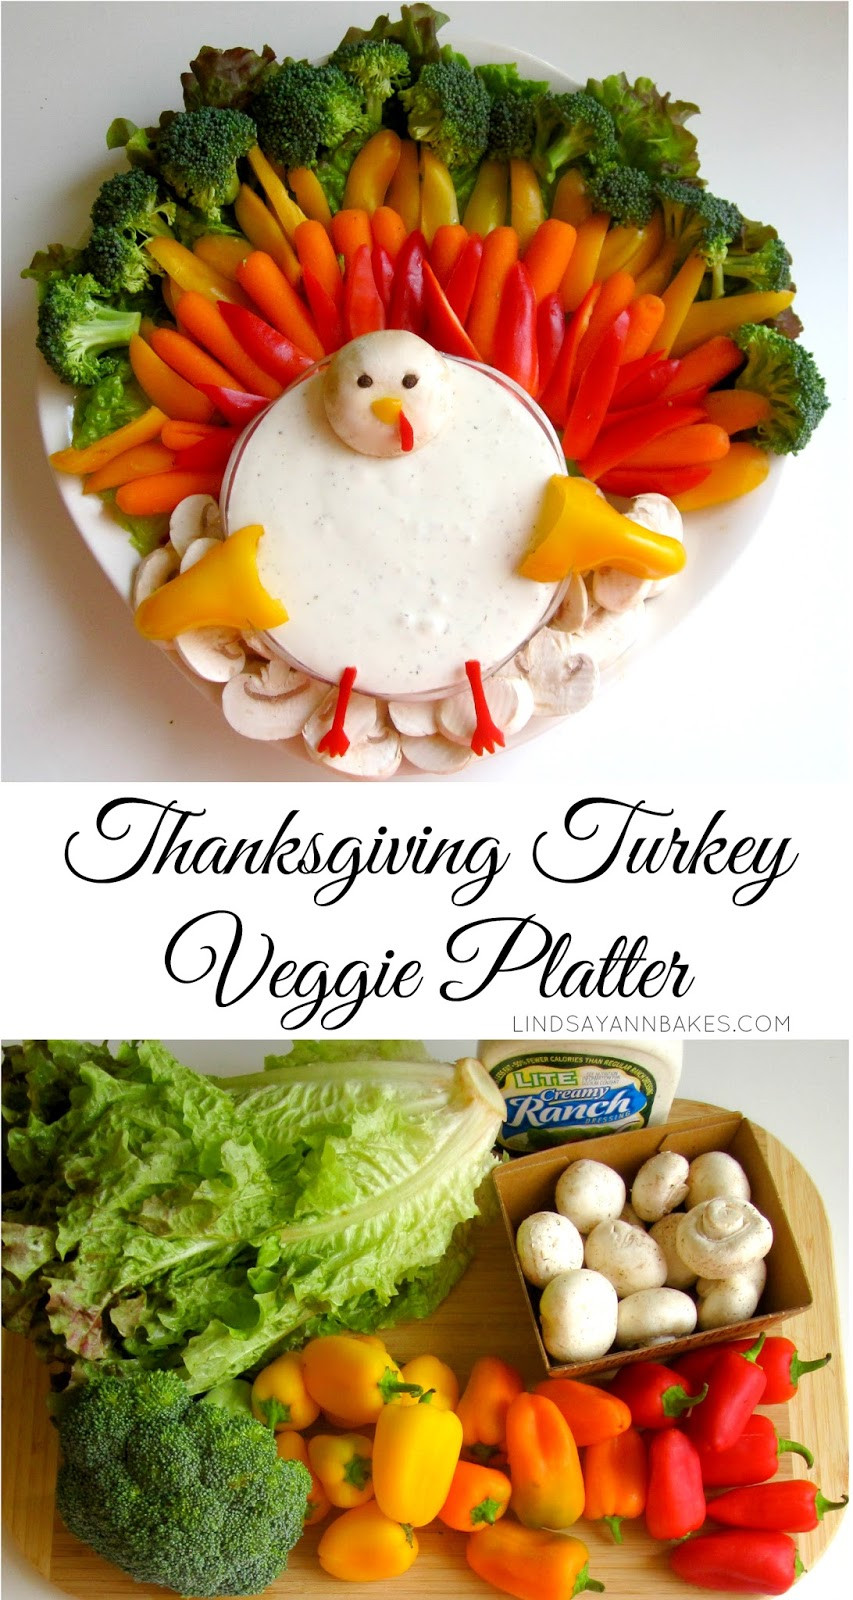 Thanksgiving Turkey Platter
 Thanksgiving Turkey Veggie Platter Lindsay Ann Bakes